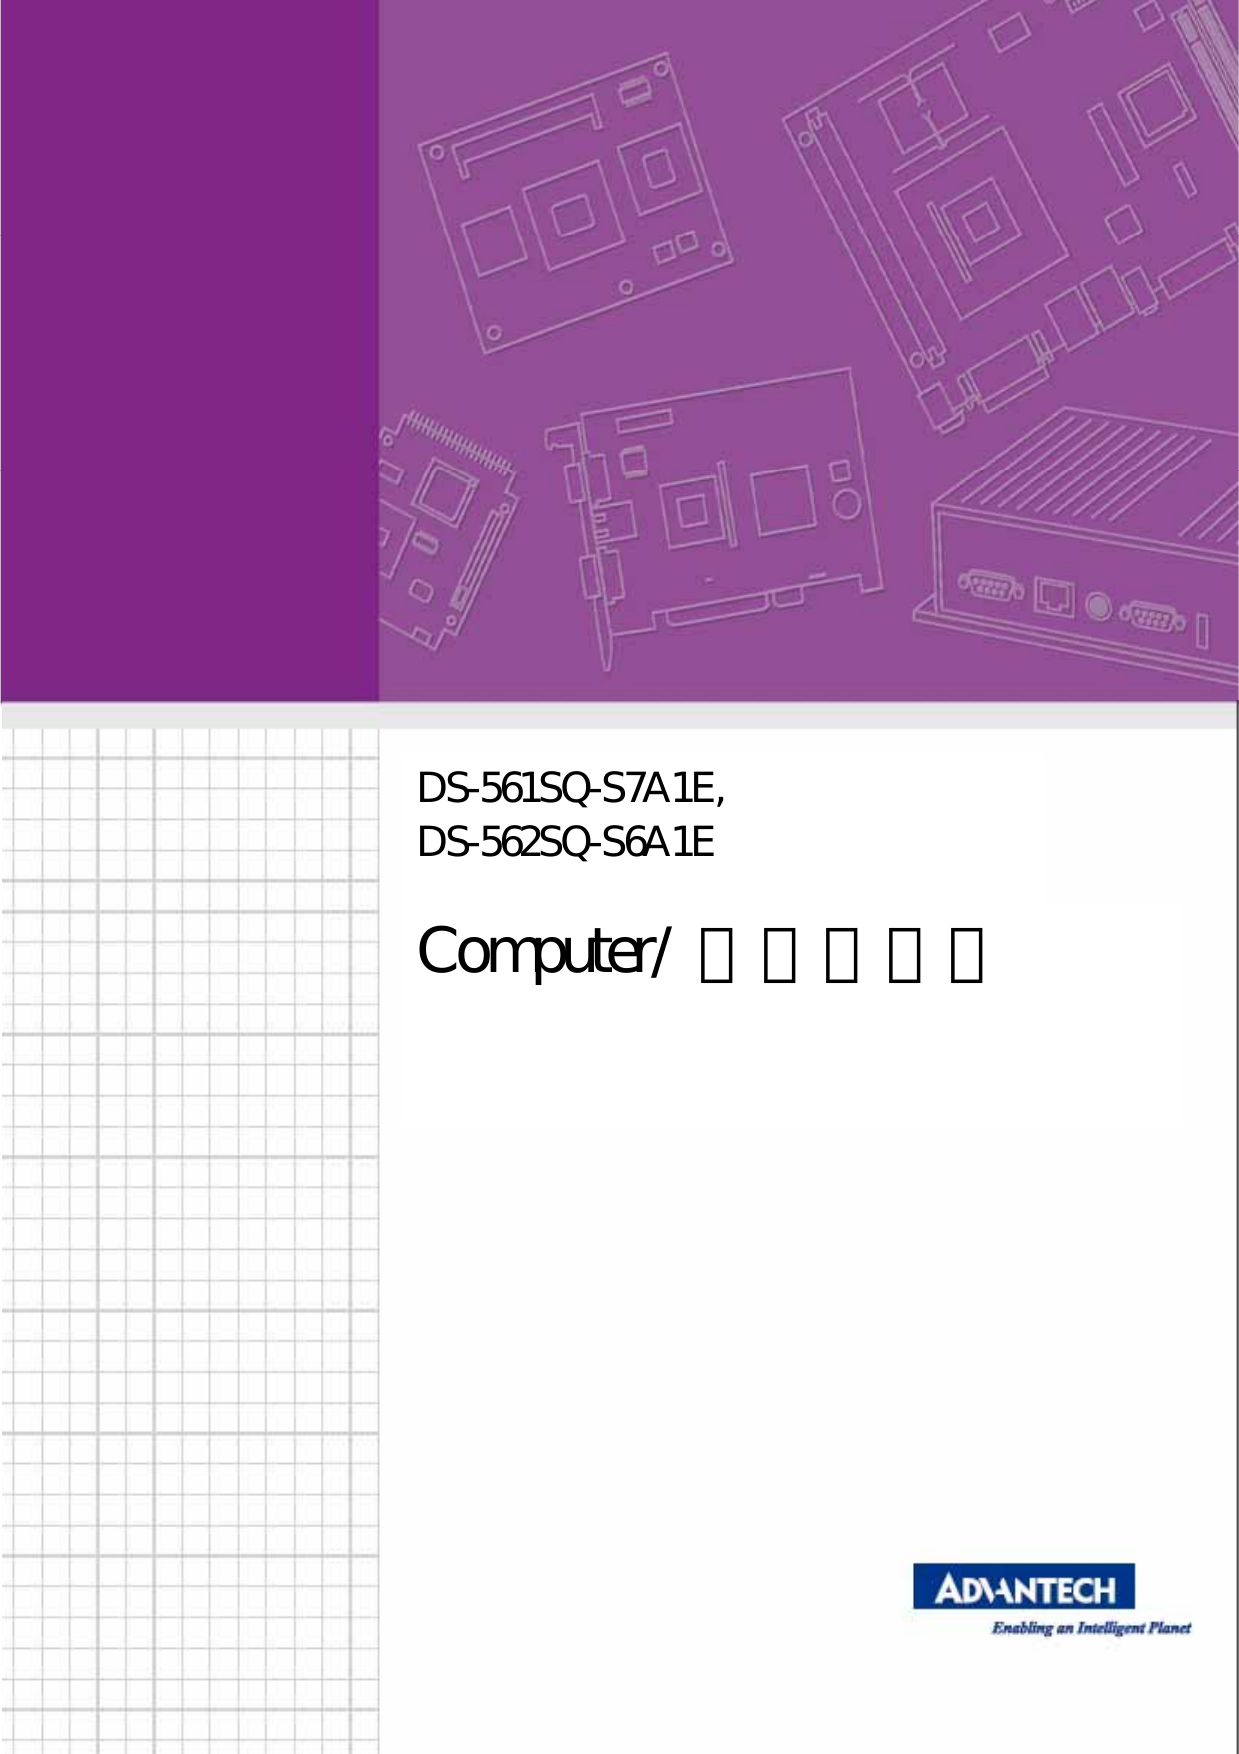 1 DS-561SQ-S7A1E, DS-562SQ-S6A1EComputer/  微型計算機